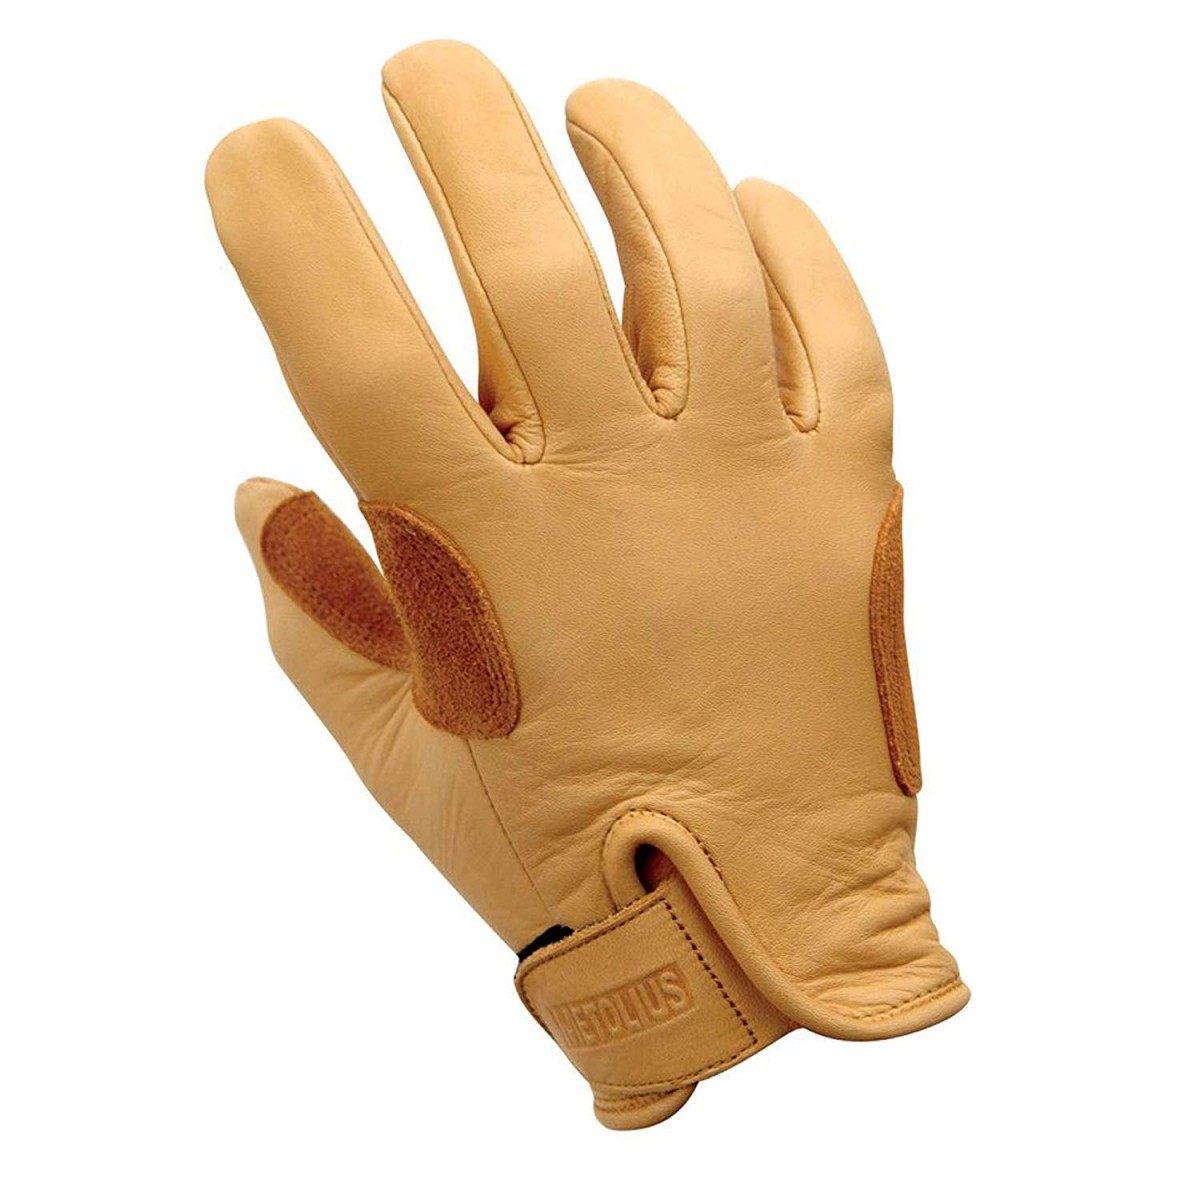 metolius belay glove climbing glove